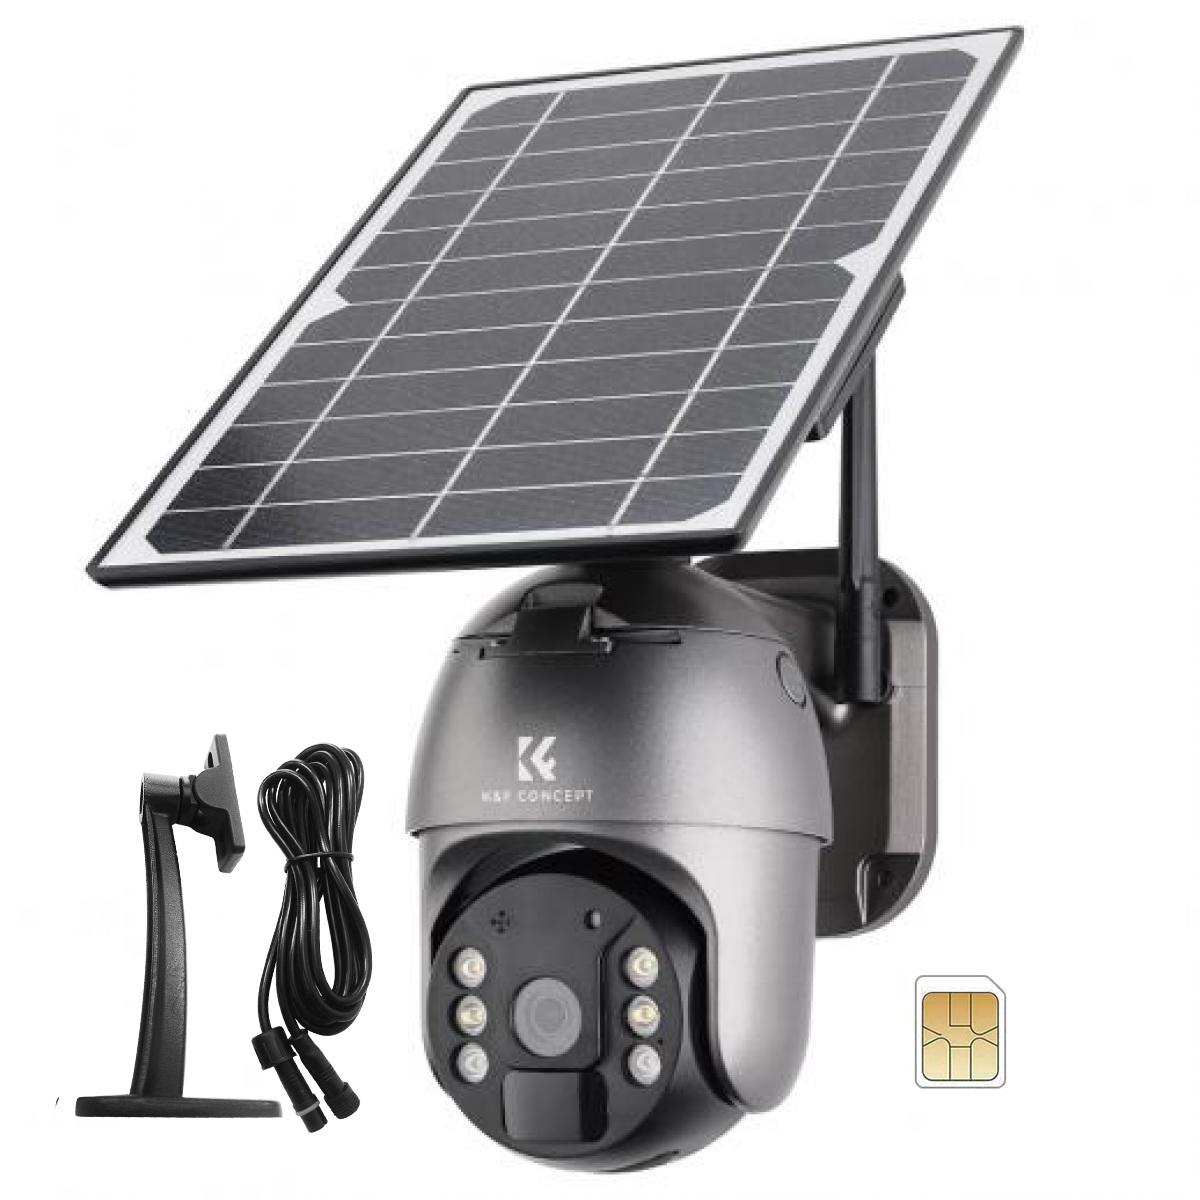 2K Cámara de Vigilancia 4G LTE Exterior Batería Solar con Tarjeta SIM - K&F  Concept